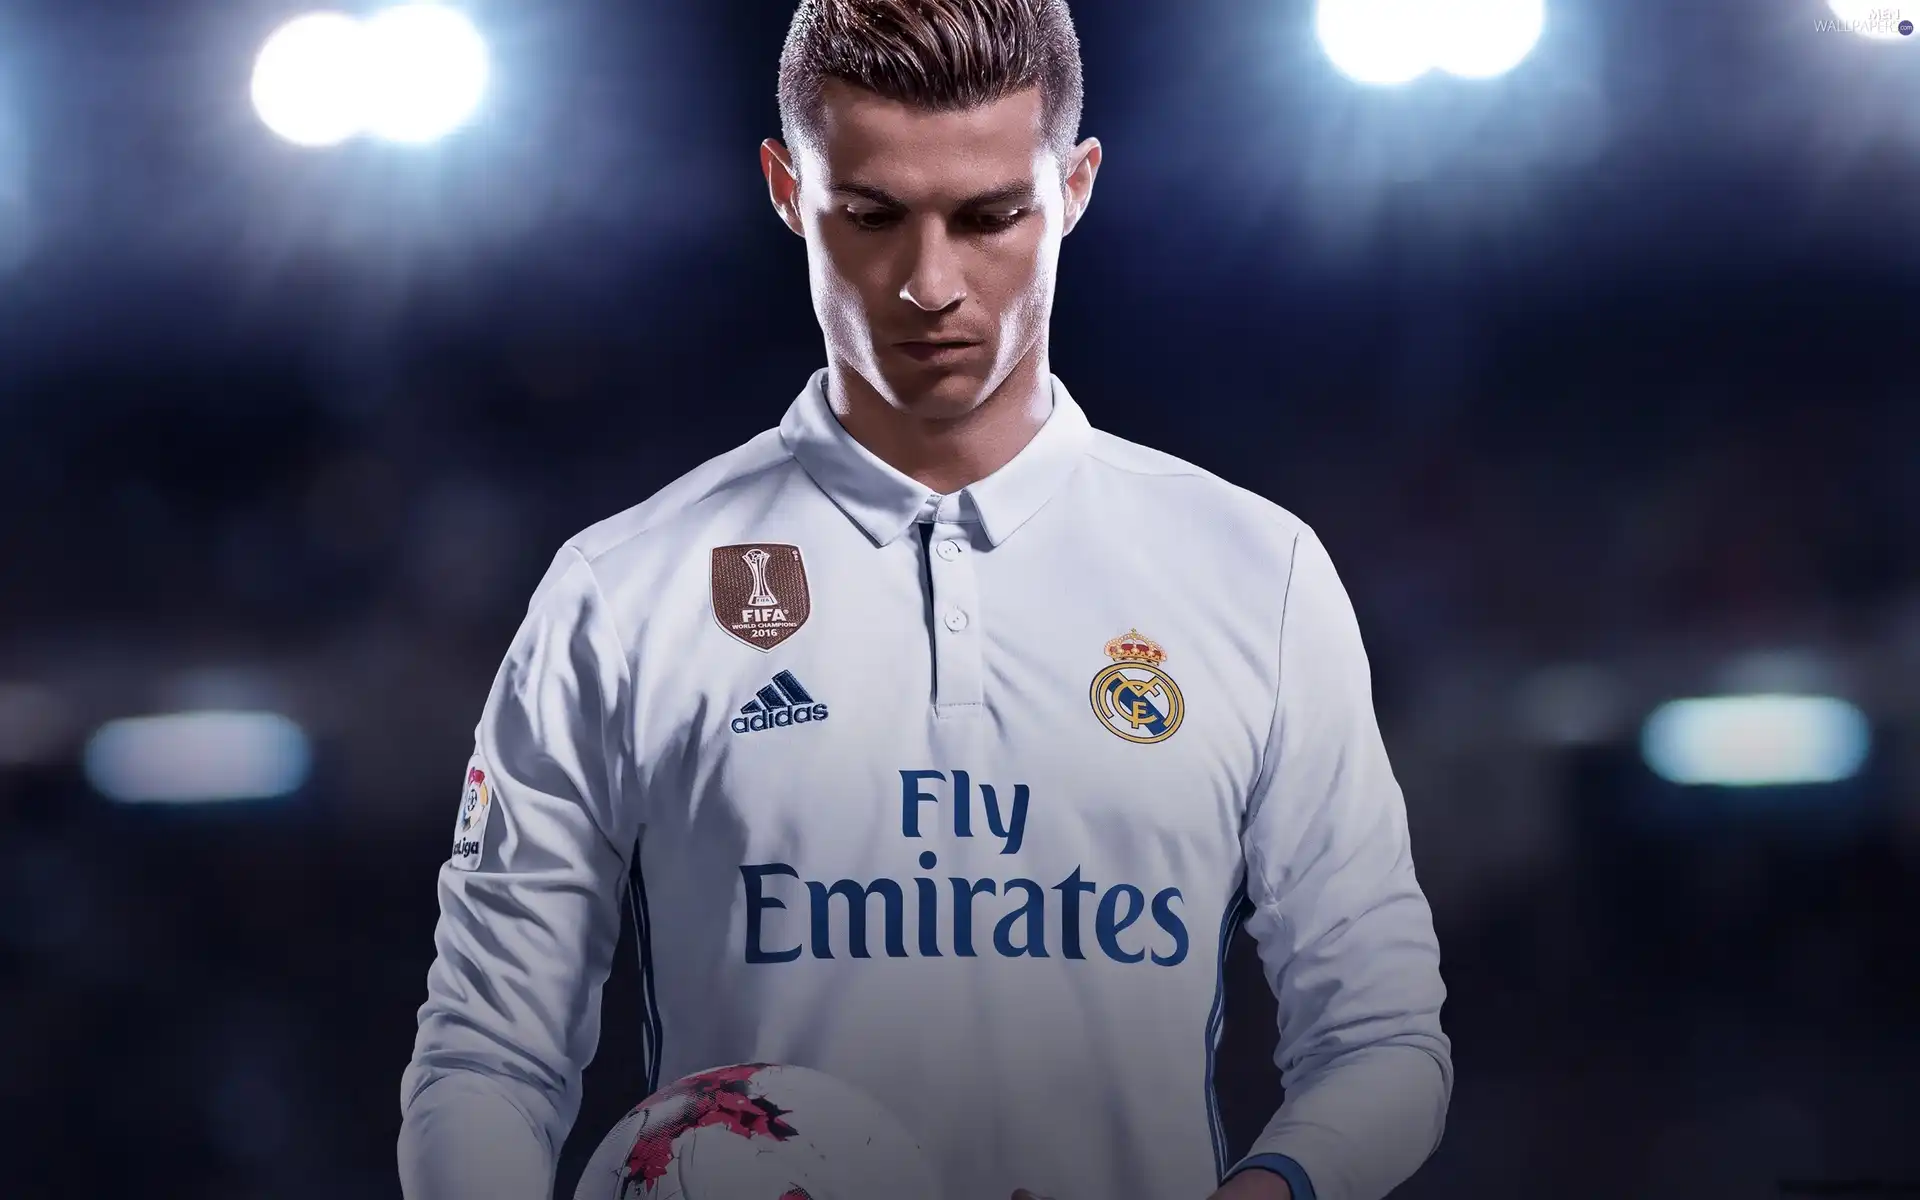 footballer, FIFA 18, Cristiano Ronaldo